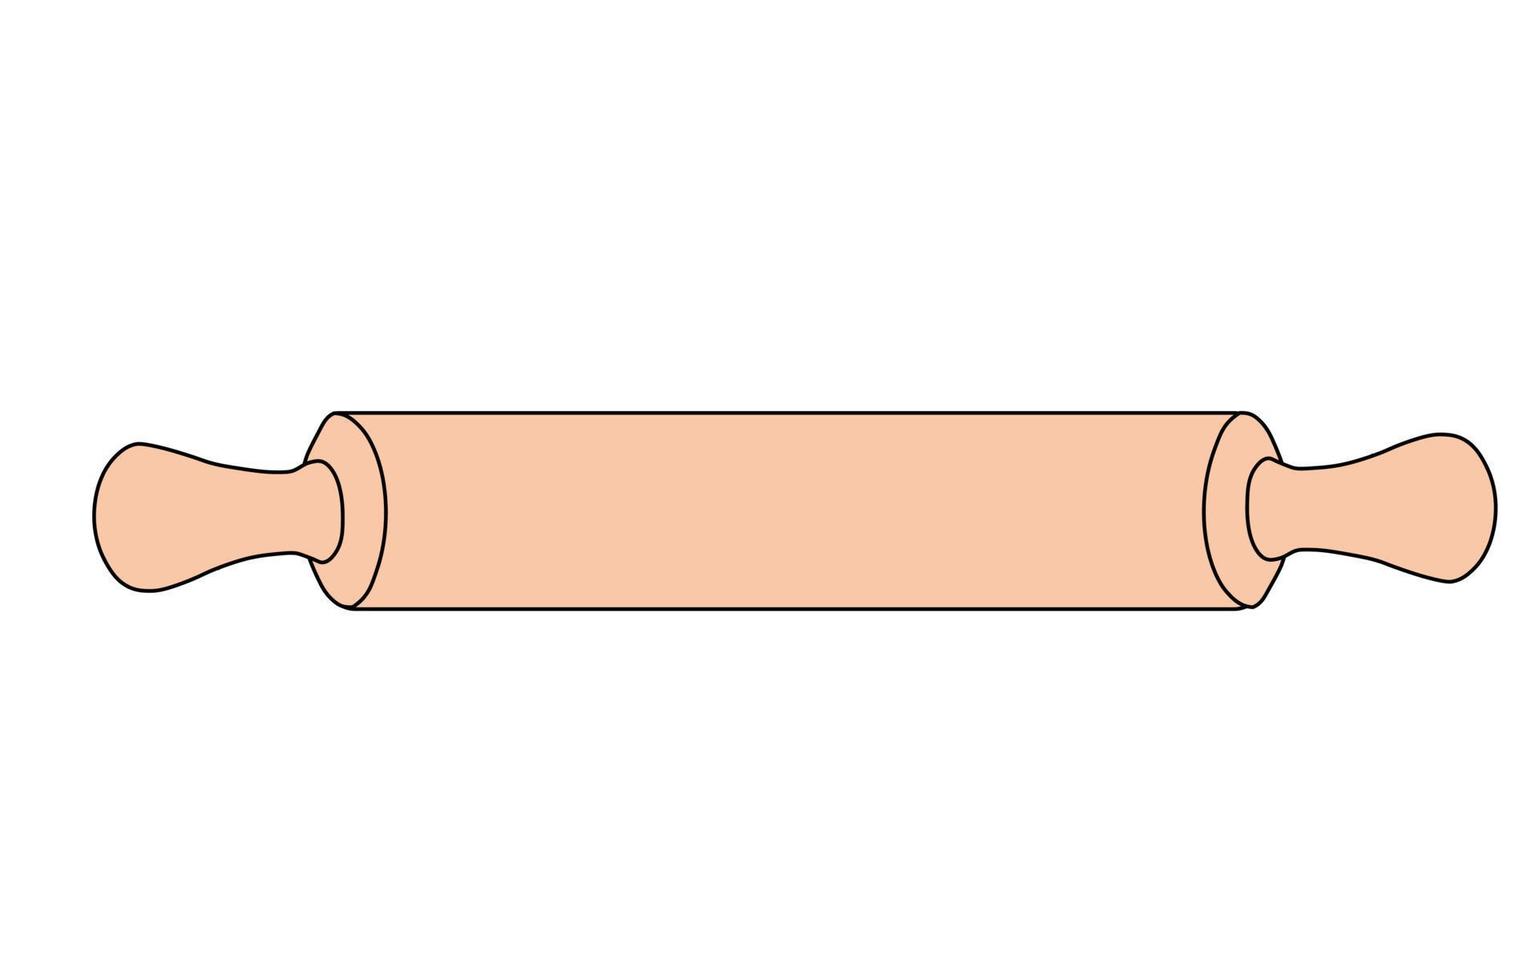 illustration de stock de vecteur de rouleau à pâtisserie. un outil pour un boulanger, faire de la pâte. isolé sur fond blanc.